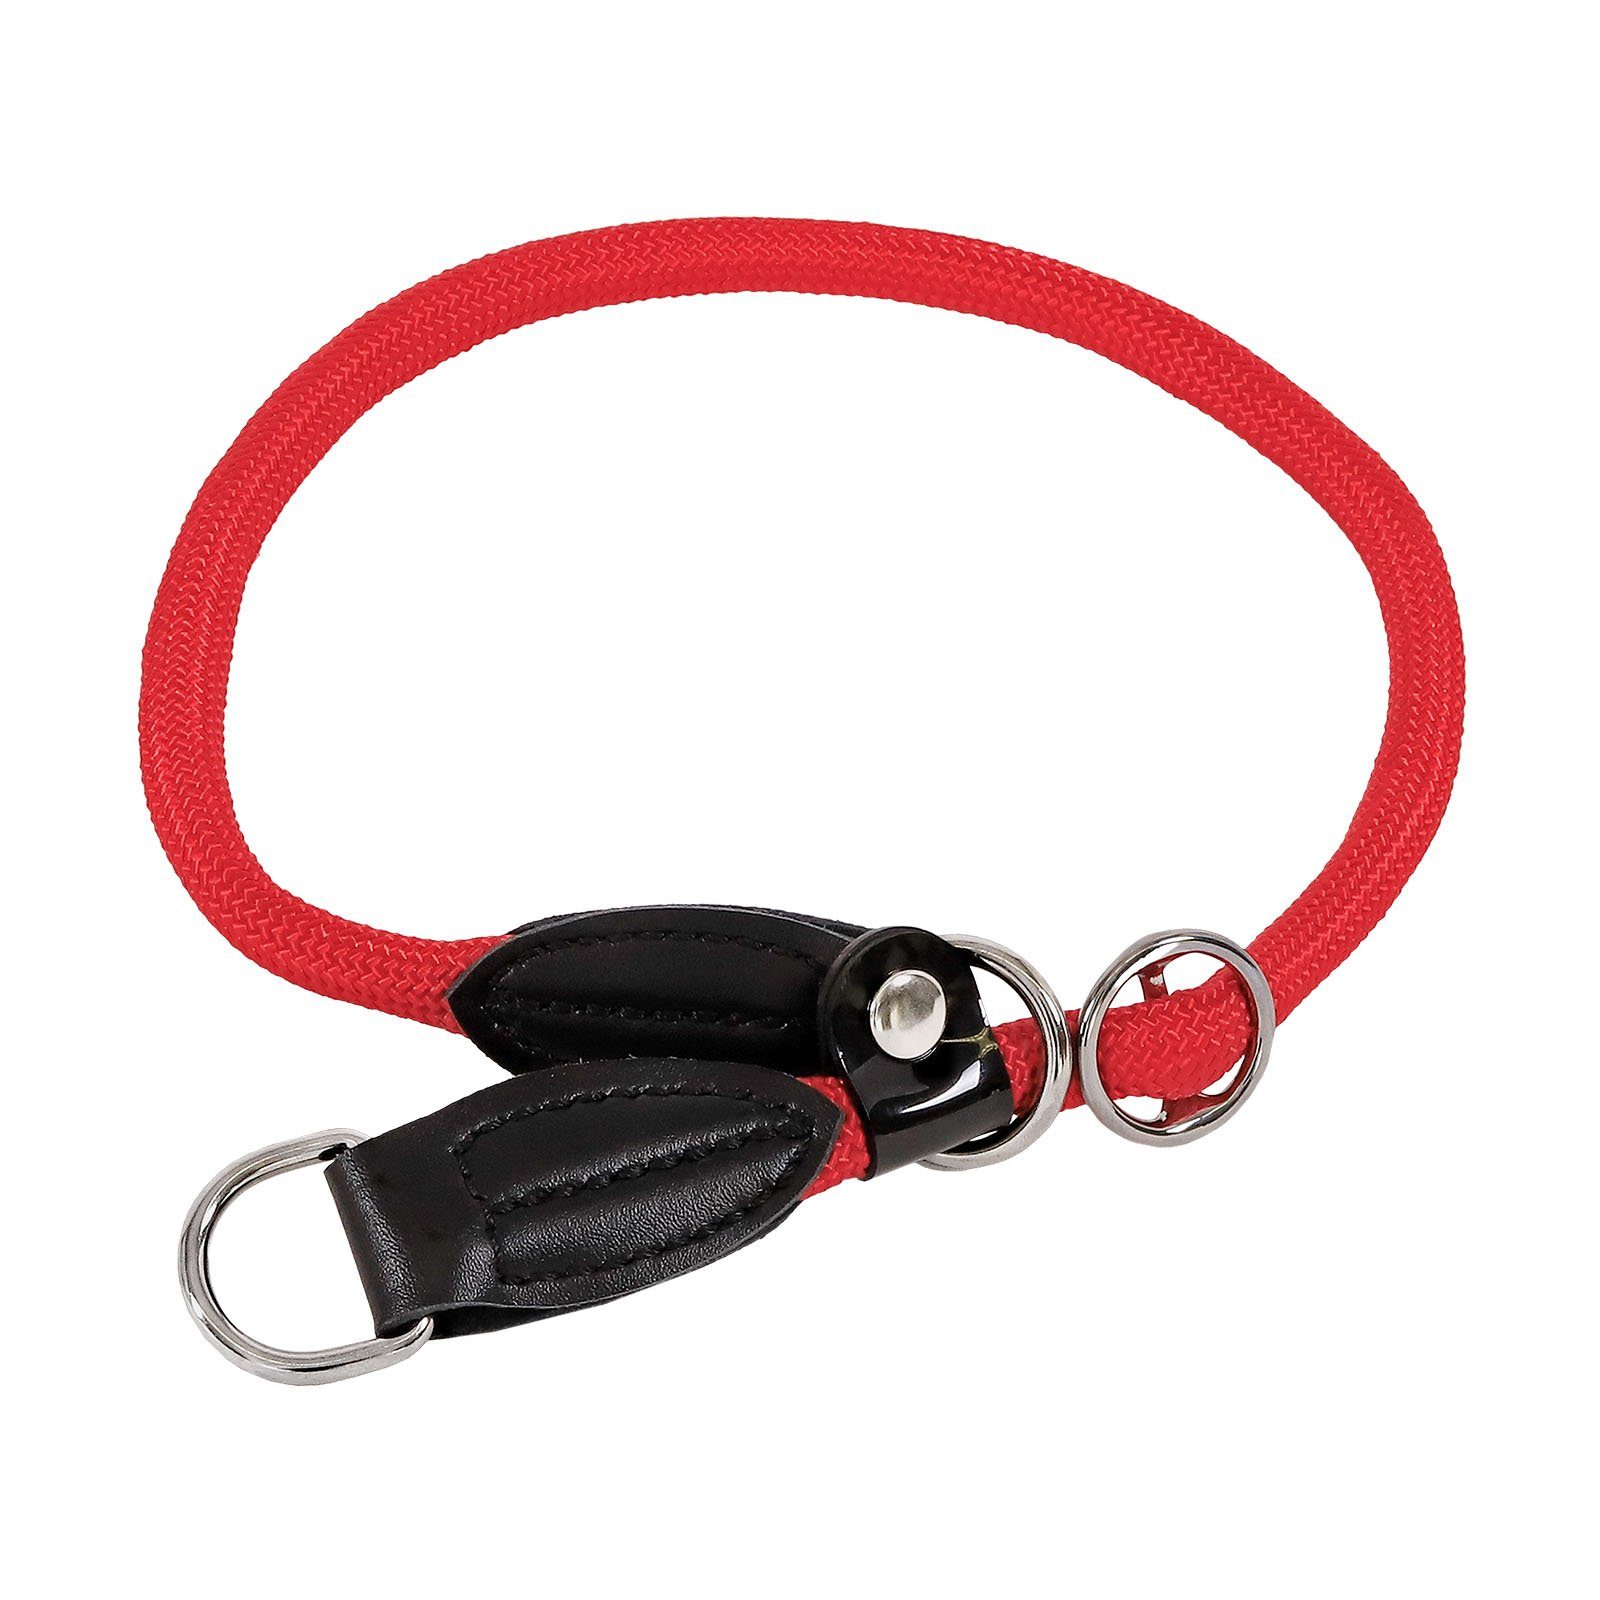 lionto Hunde-Halsband Hundehalsband mit Zugstopp, Retrieverhalsband, Nylon, 55 cm, rot